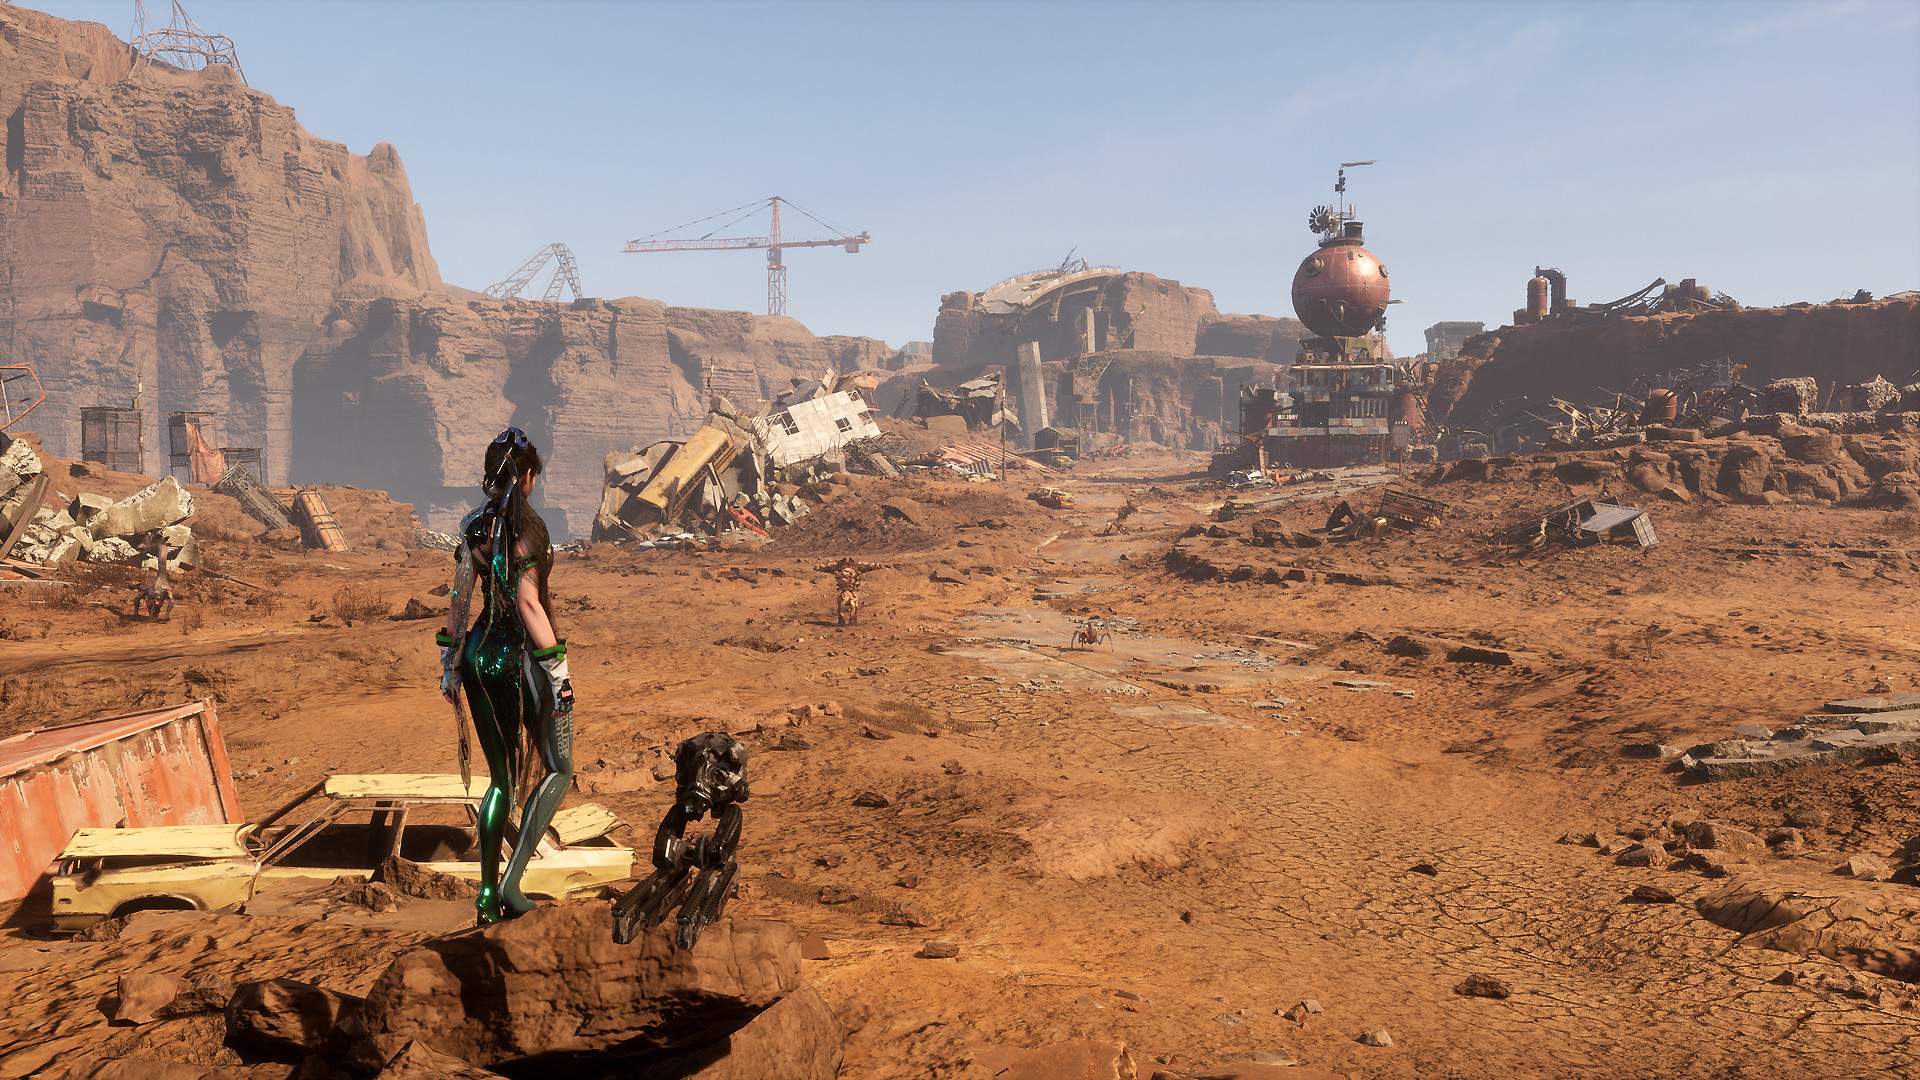 Eve porte son regard sur un paysage désertique, couvert de véhicules détruits et de containers. Des créatures se baladent dans la zone ouverte au-devant, tandis que des grues peuvent être observées au loin.